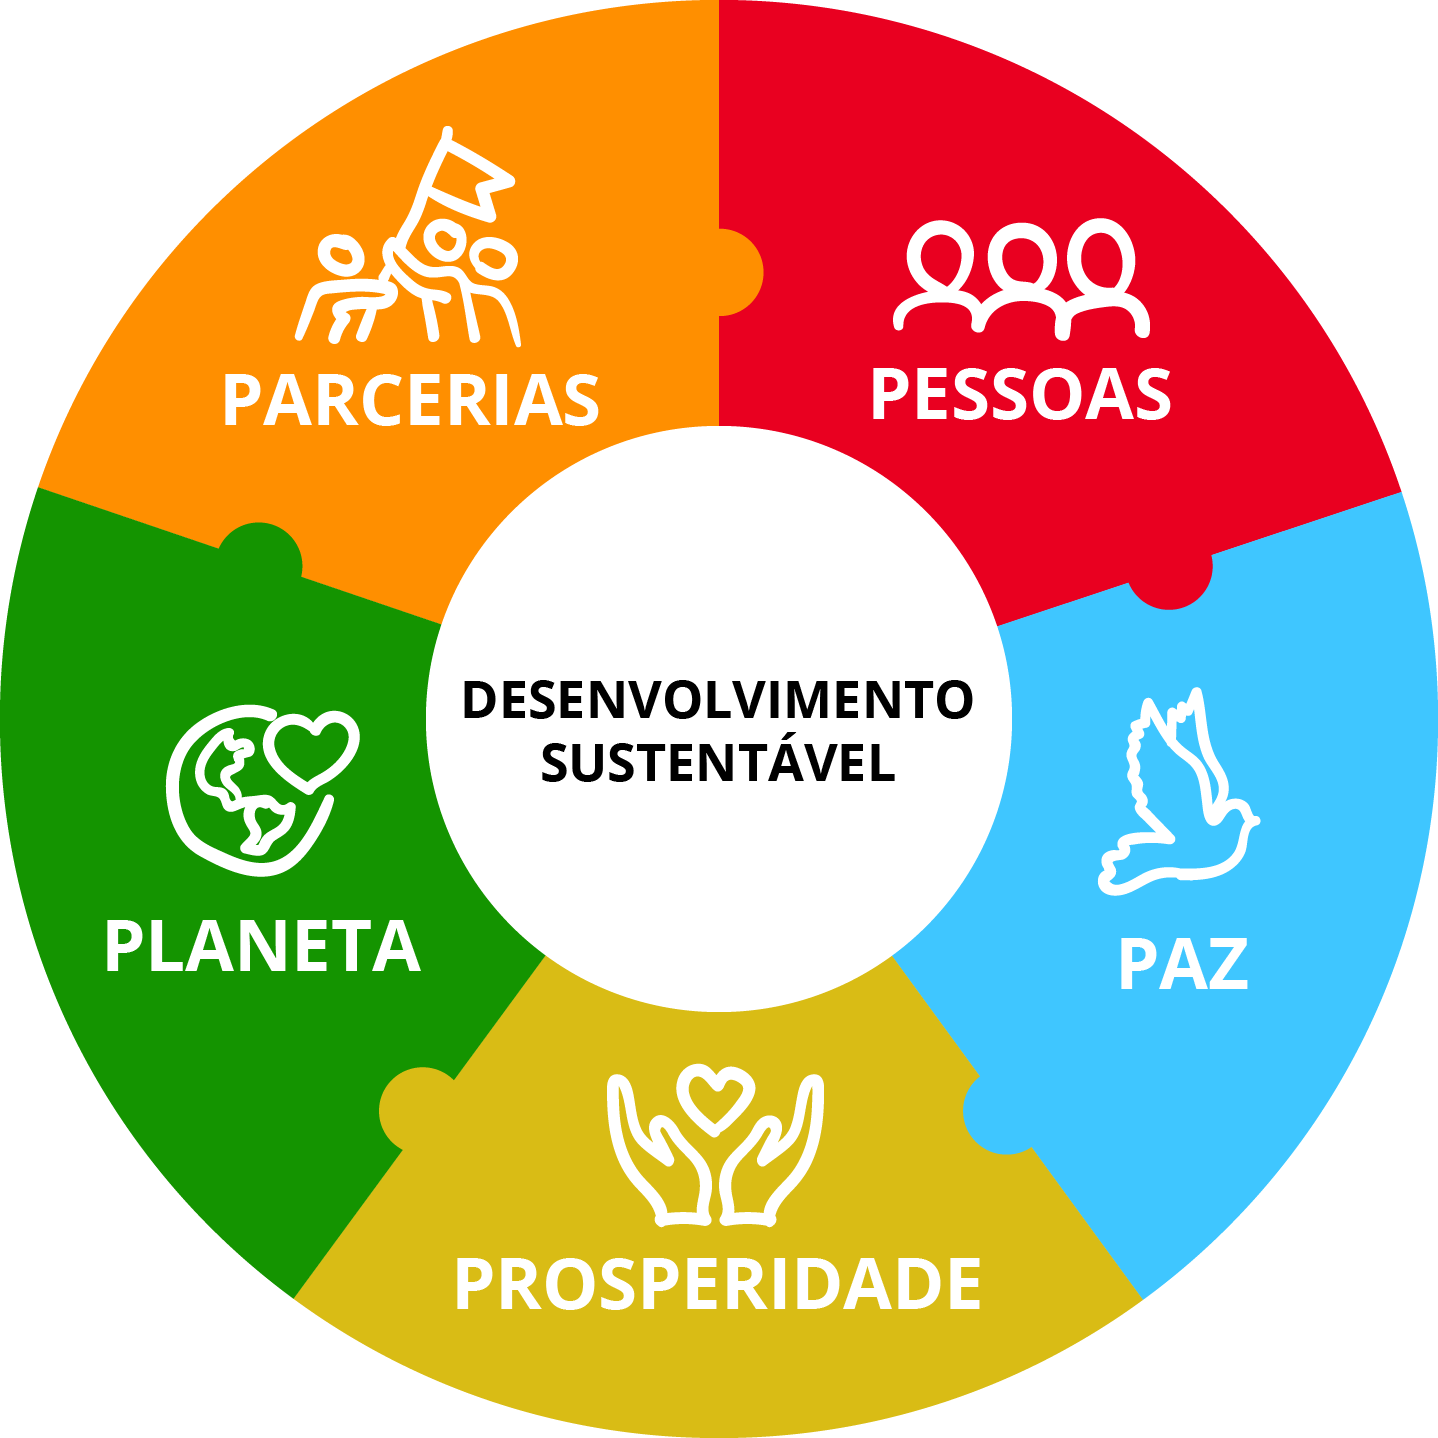  Infográfico mostrando os 5 Ps da sustentabilidade: pessoas, prosperidade, paz, parcerias e planeta.